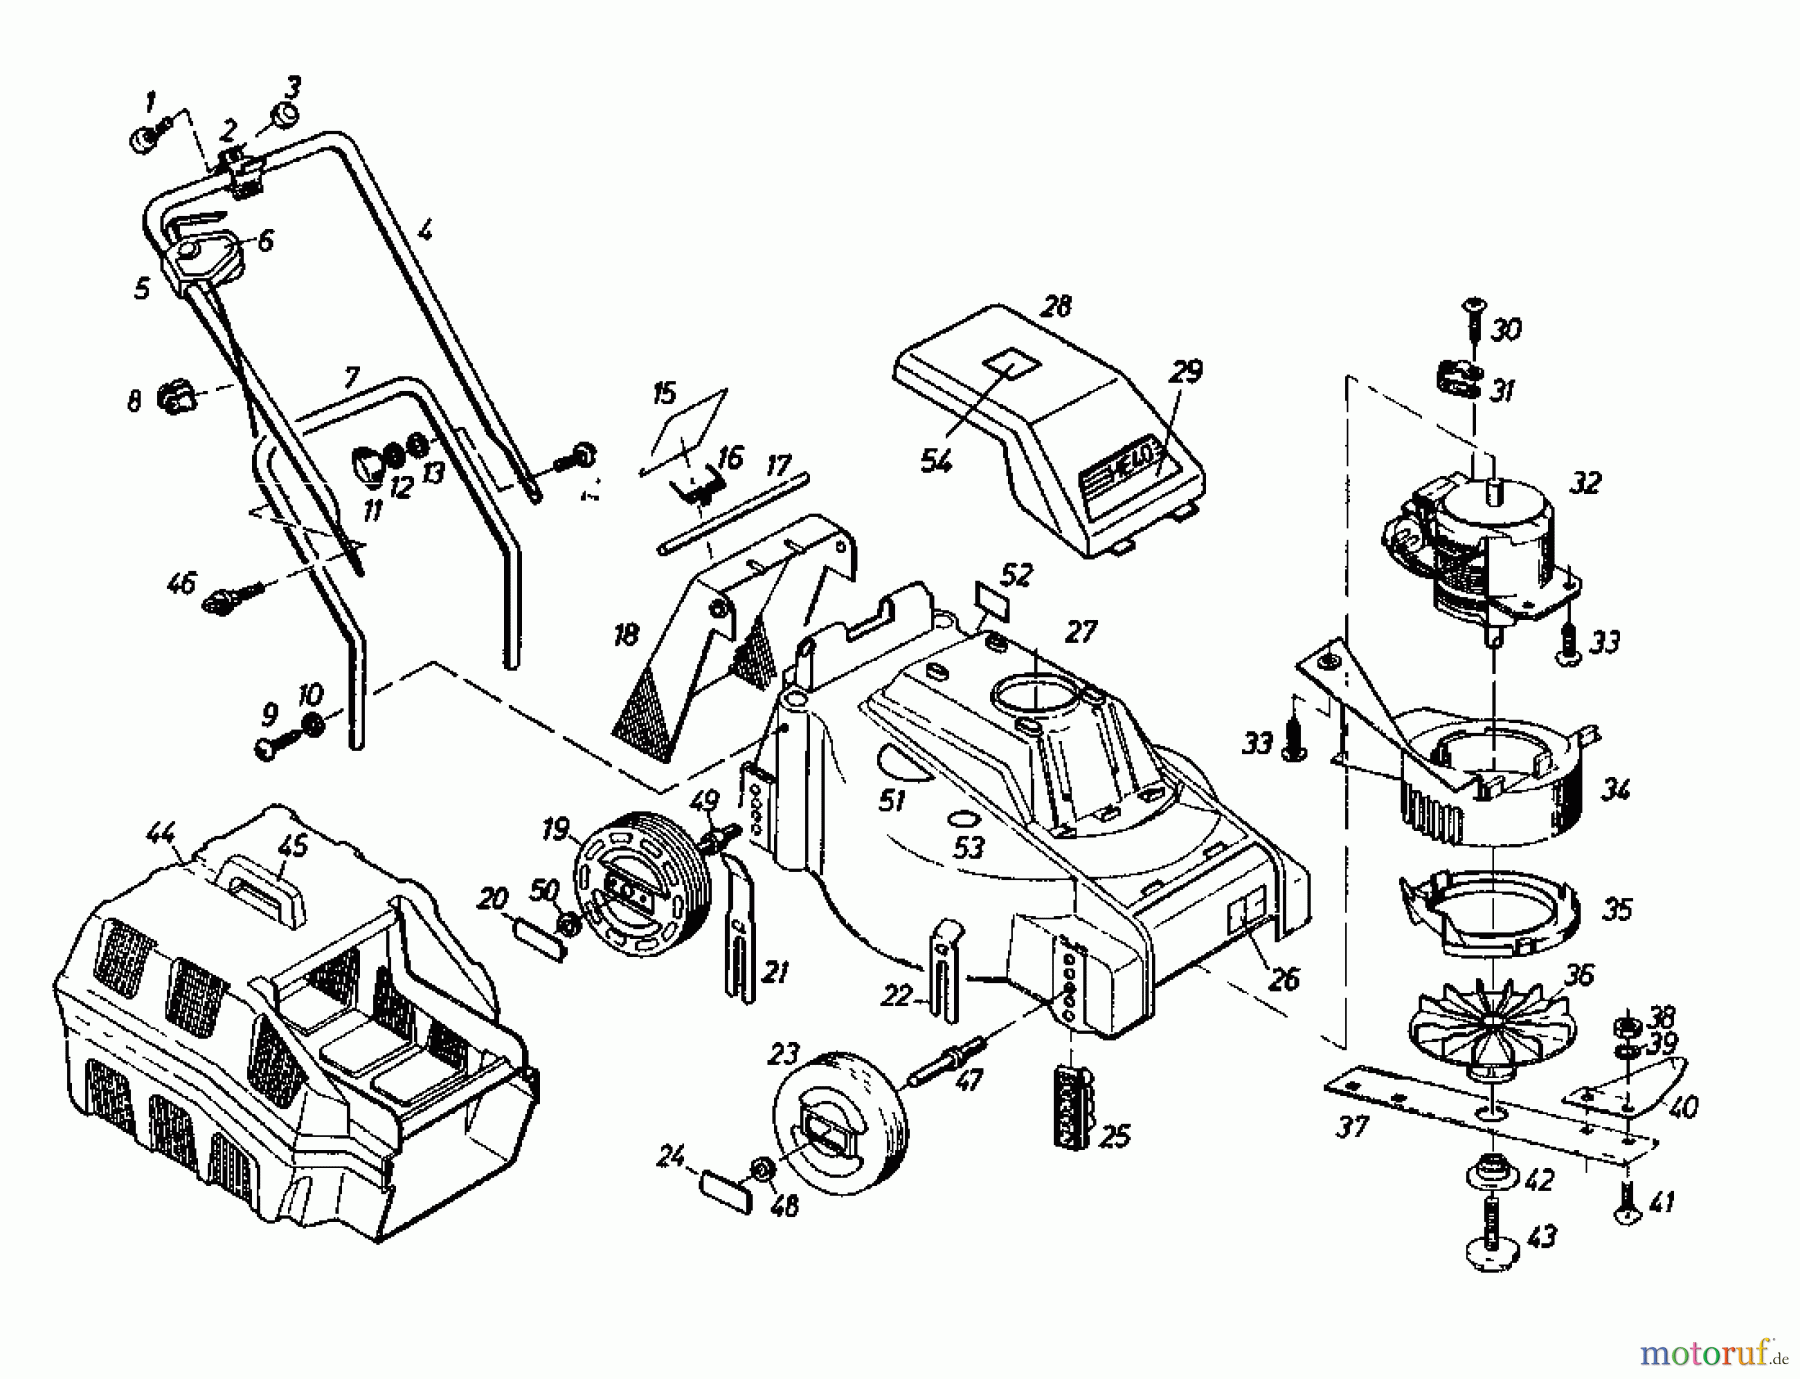  Gutbrod Tondeuse électrique HE 40 02889.04  (1987) Machine de base